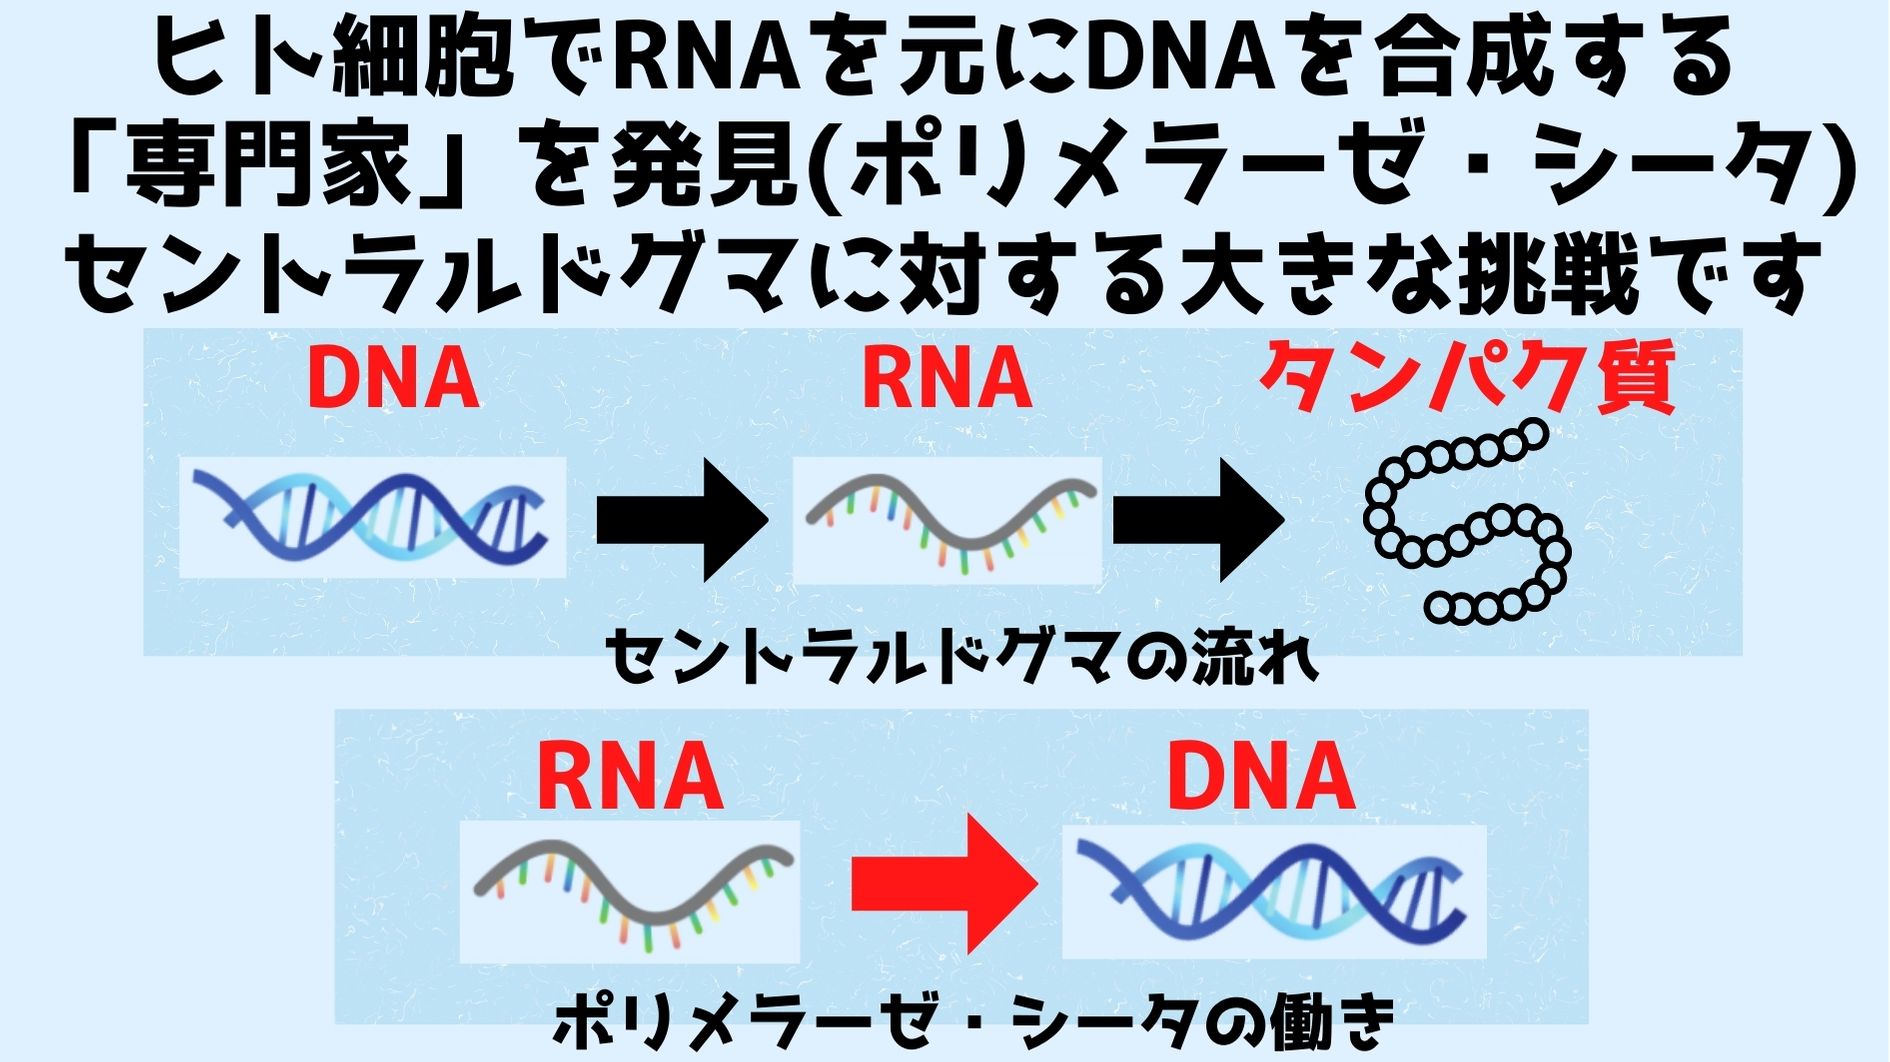 セントラルドグマはDNA➔RNA➔タンパク質の流れを示すが新たな発見によりRNAからDNAを合成する能力が人間の細胞にもあった